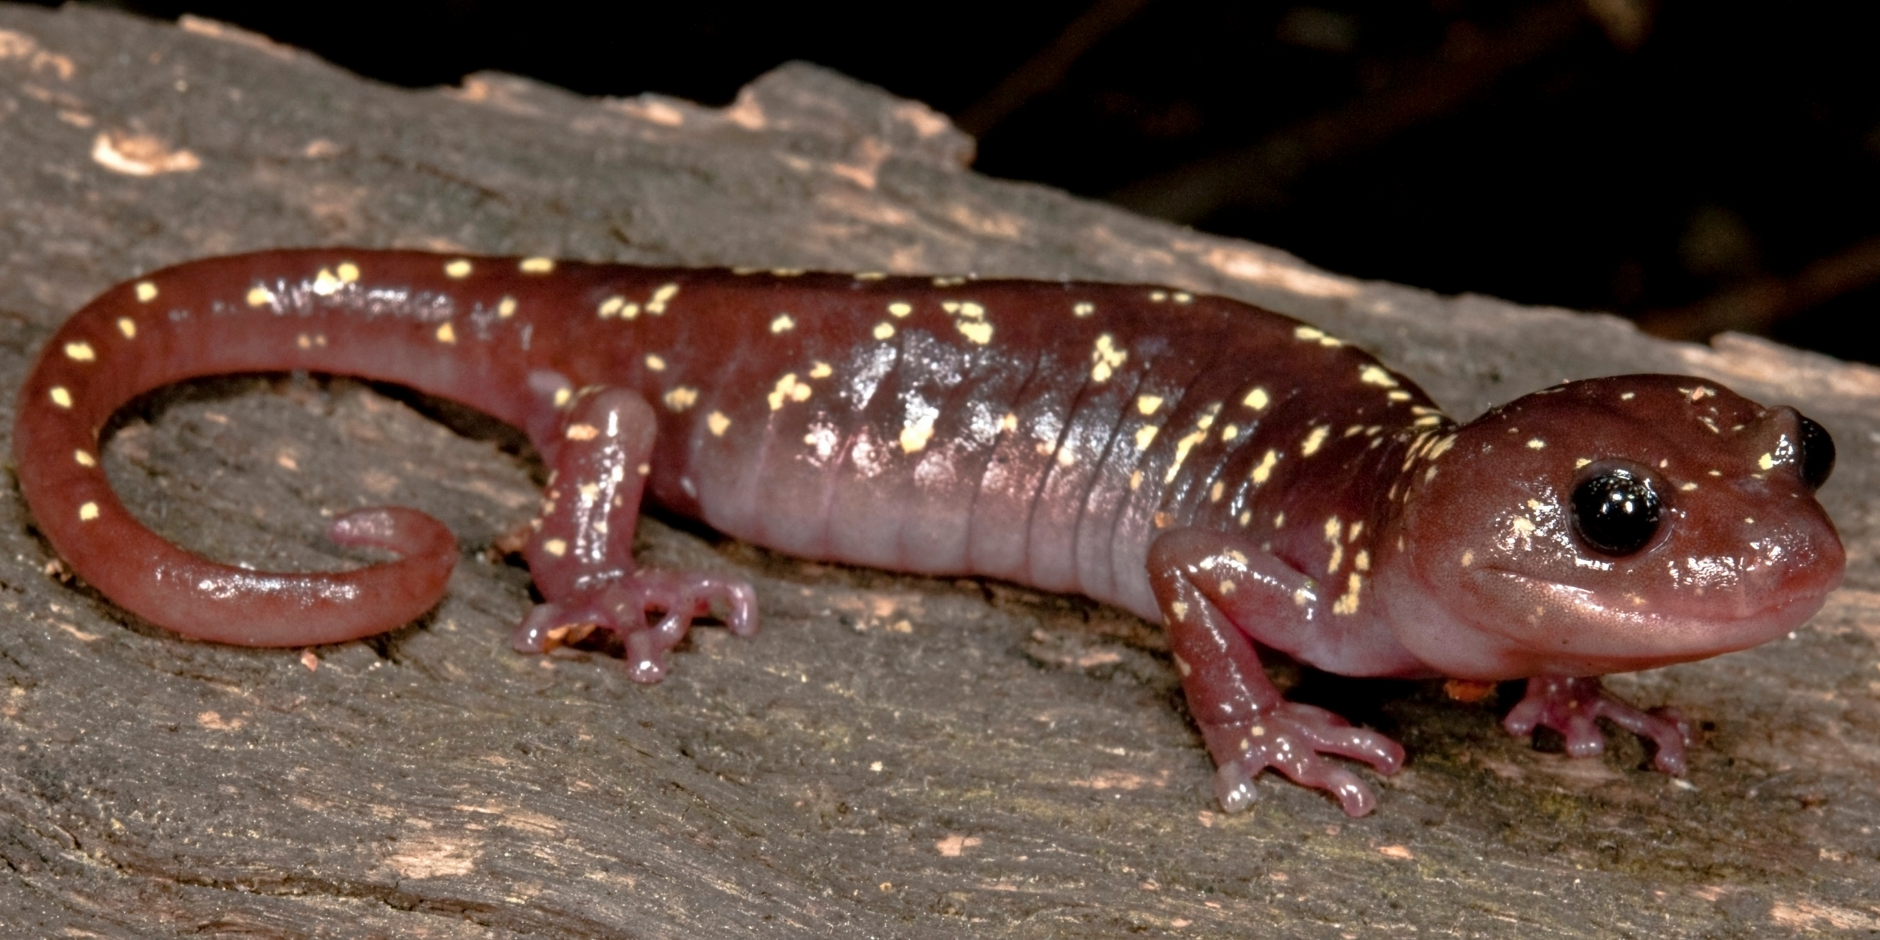 Arboreal salamander - Canva - 1-1